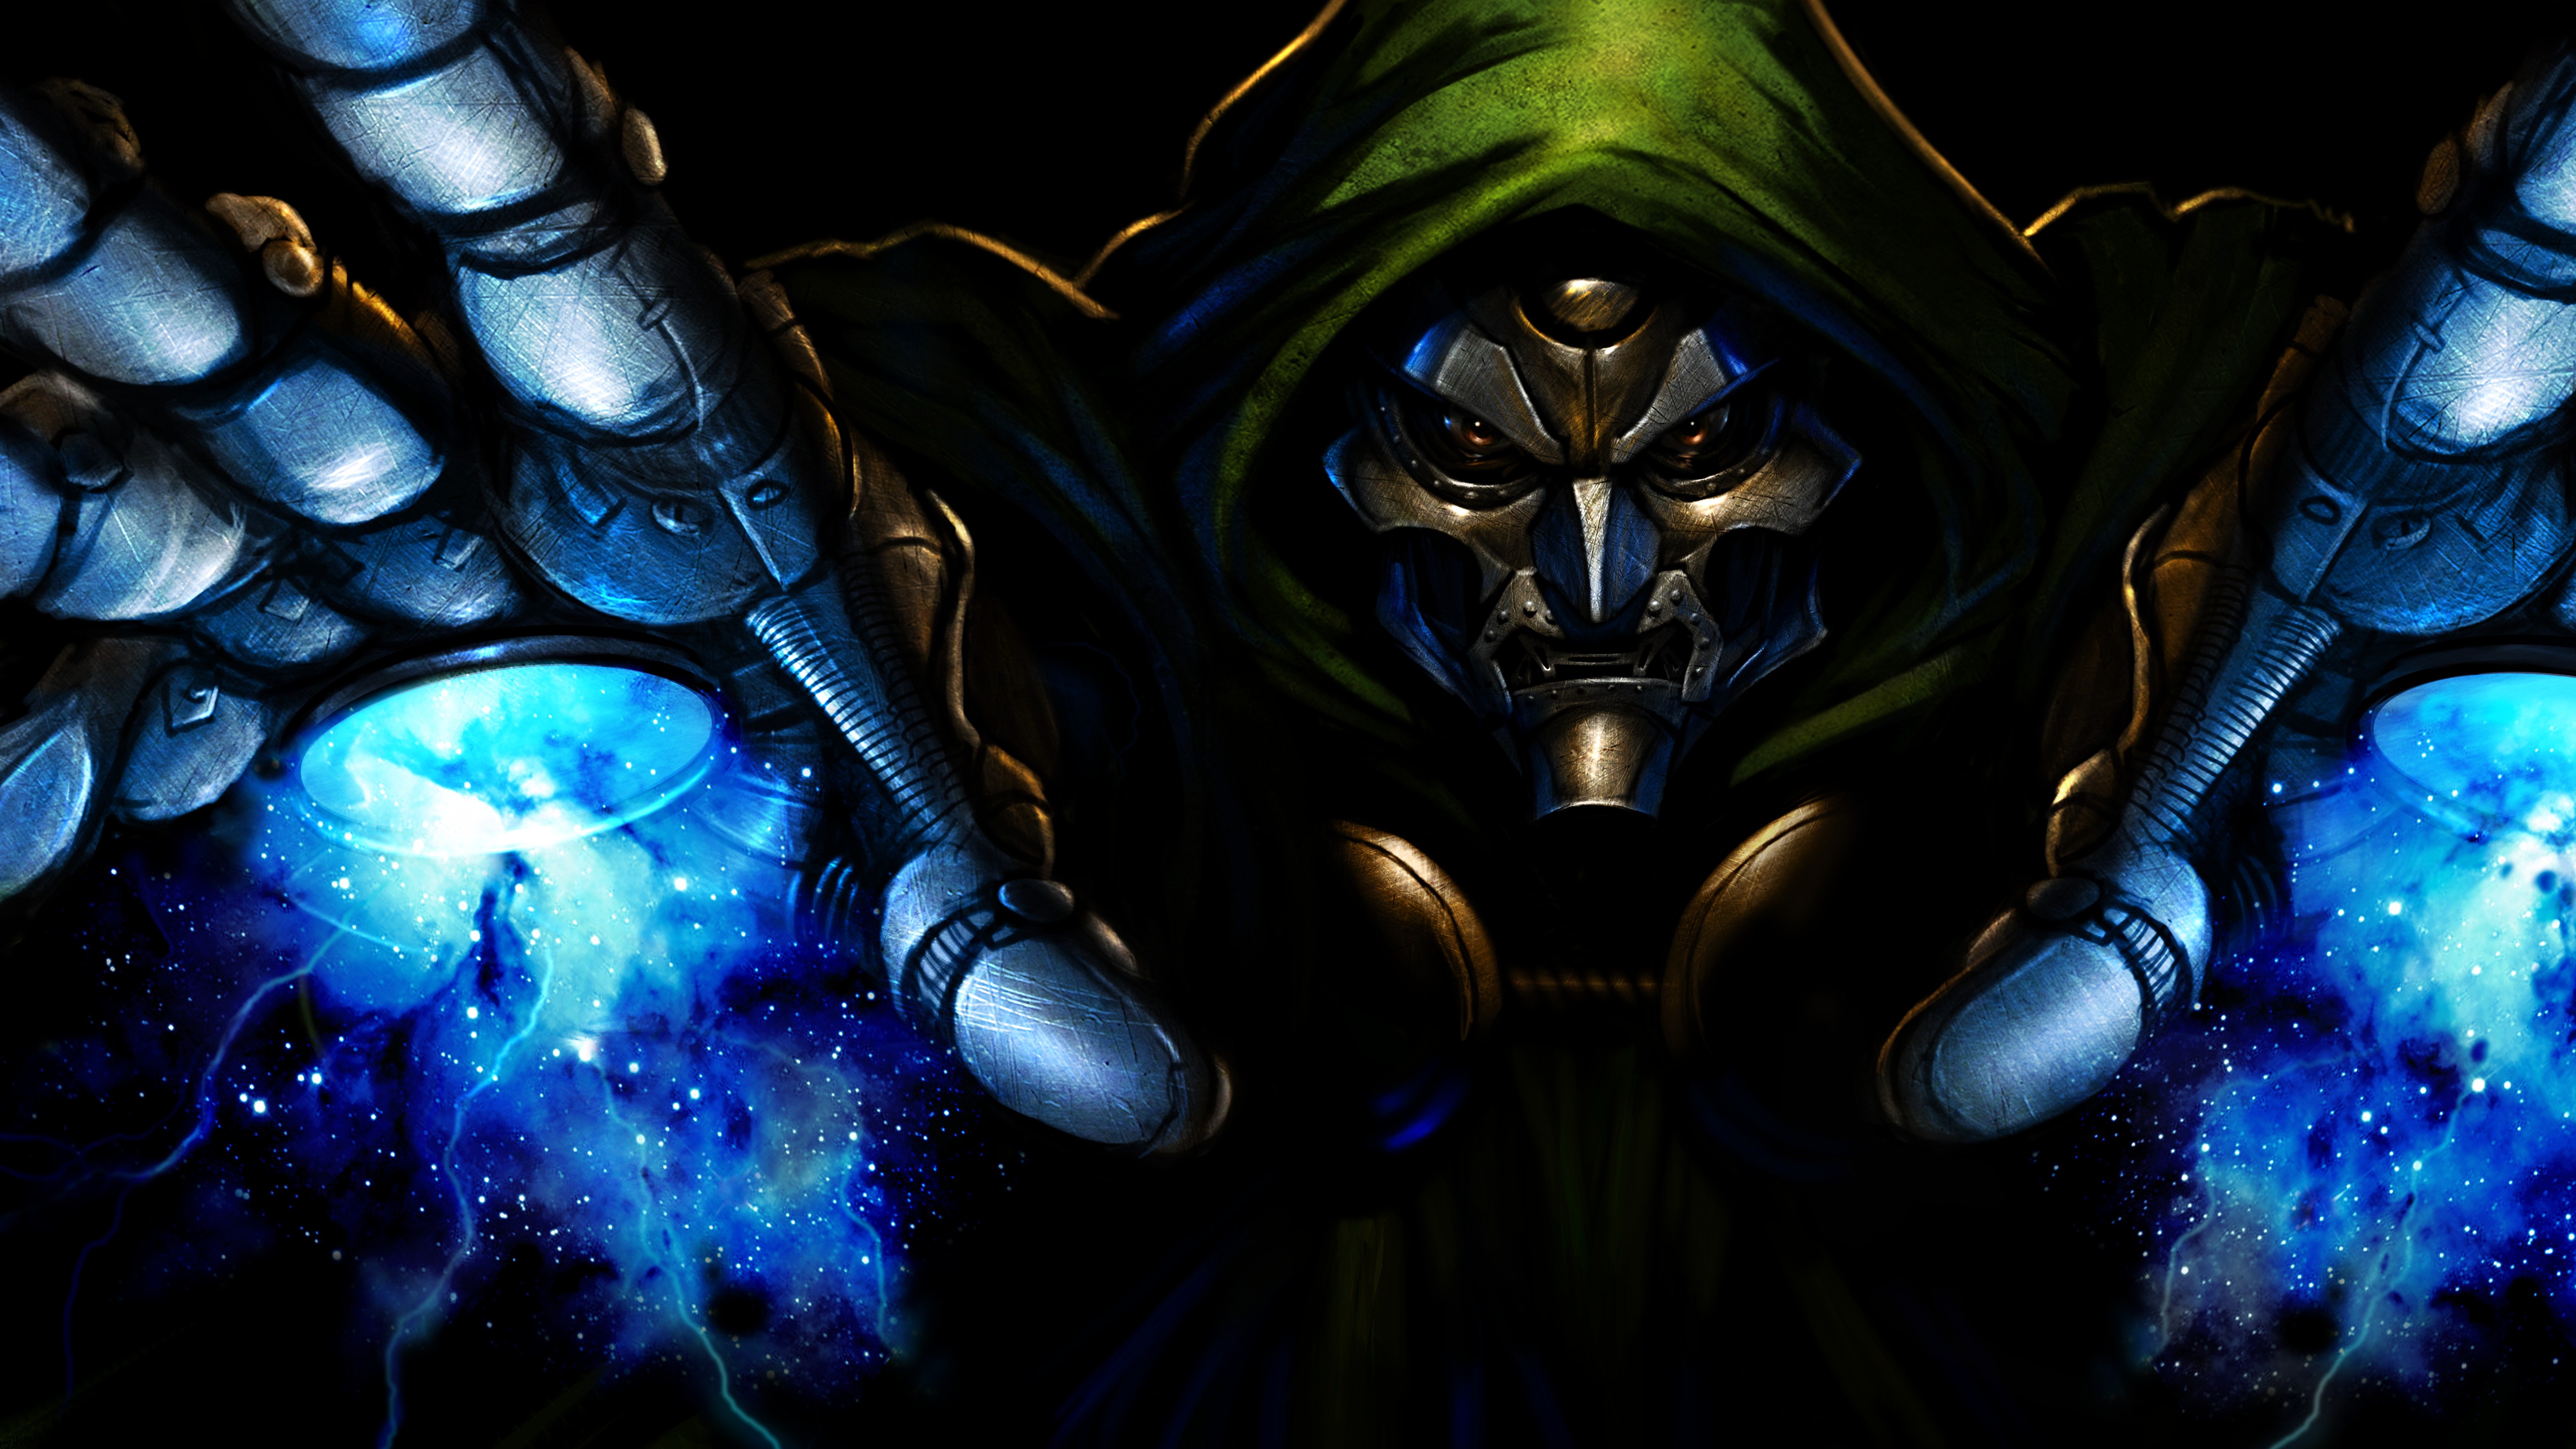 Dr Doom Ultimate Alliance Artwork 5333x2999